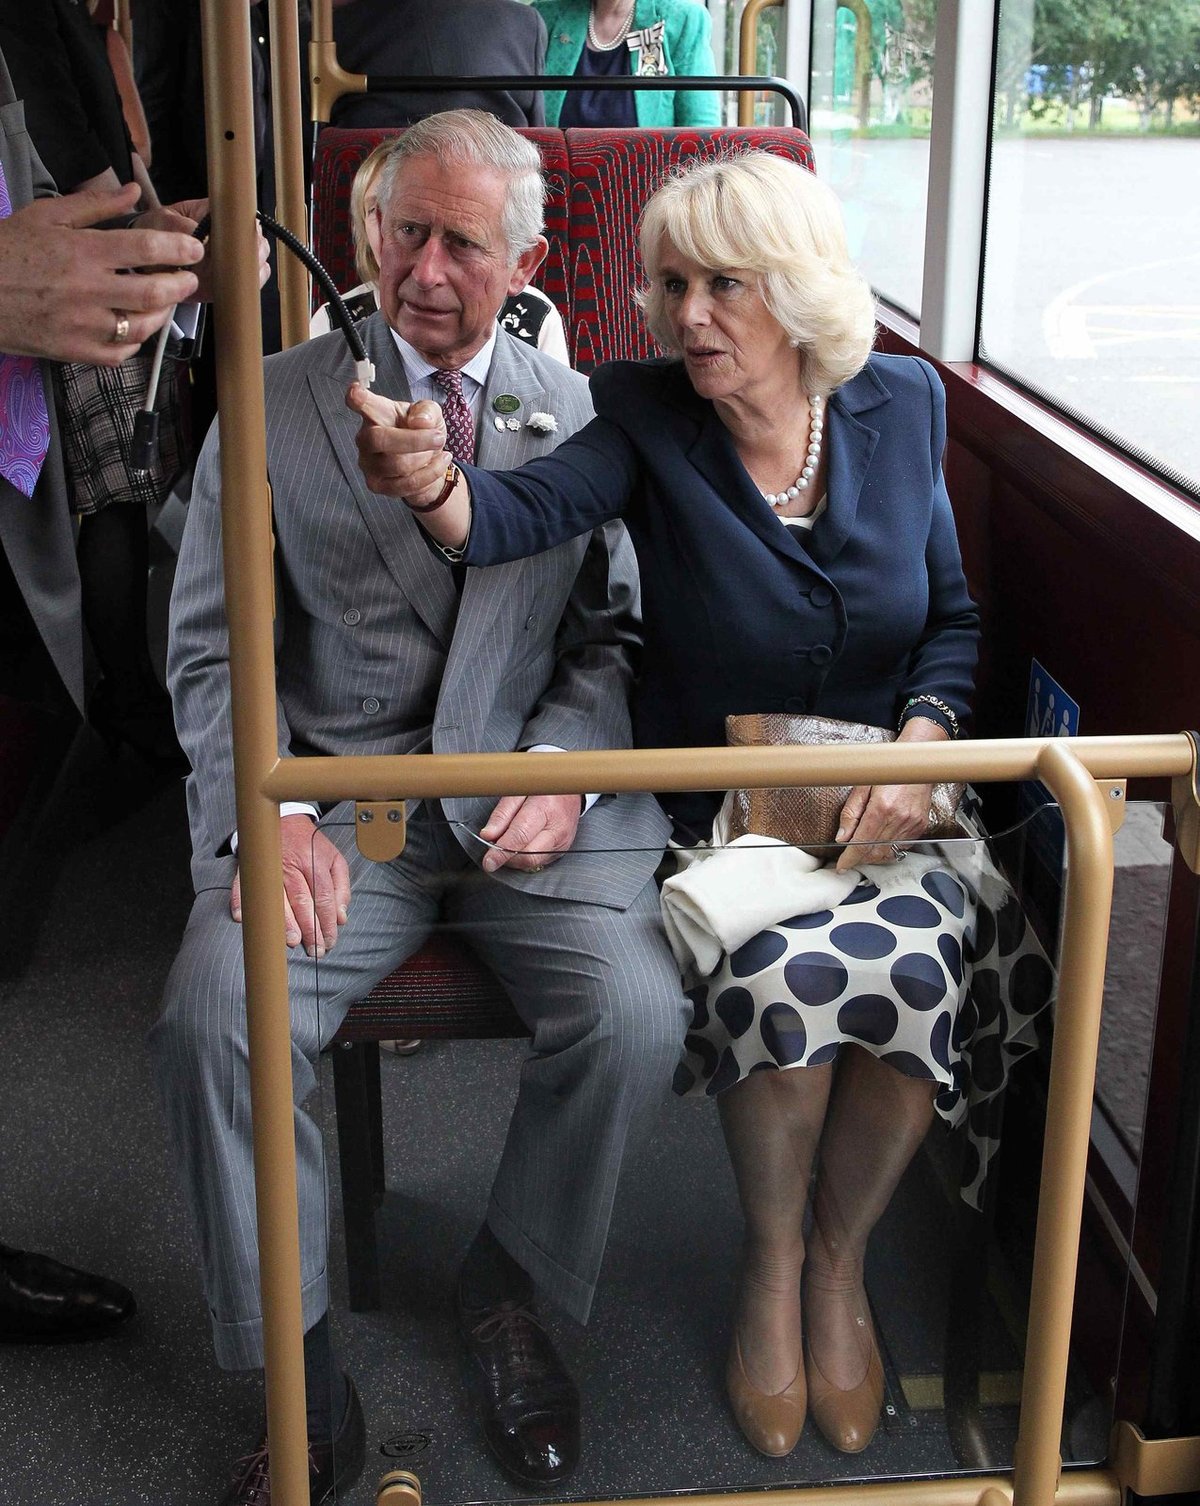 Vévodkyně z Cornwallu, Camilla byla z vybavení ekologického autobusu nadšená.